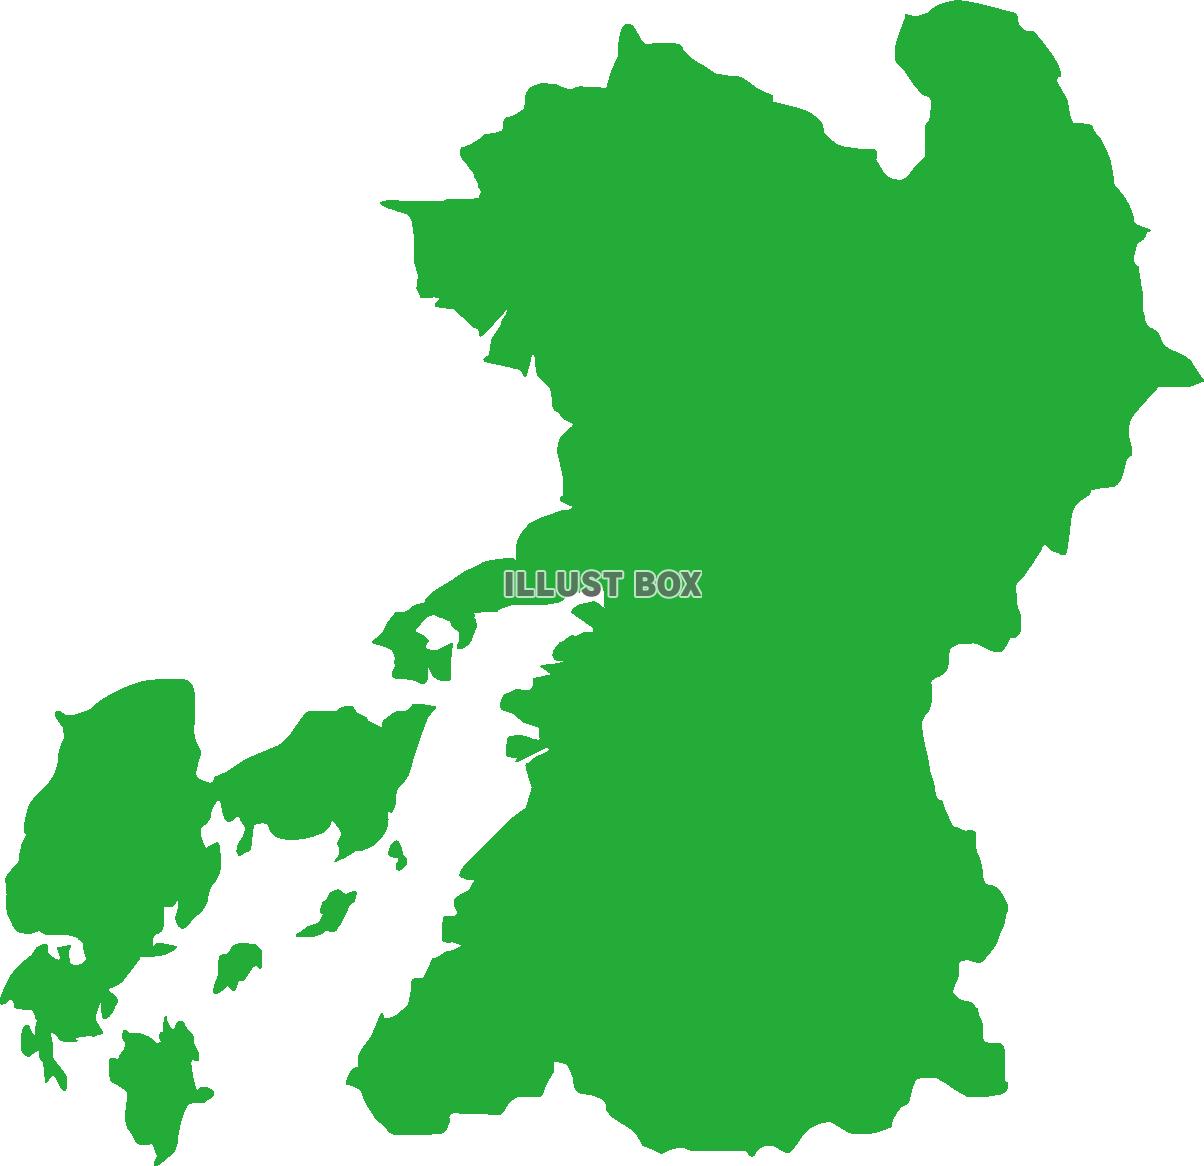 熊本県の地図（緑色）